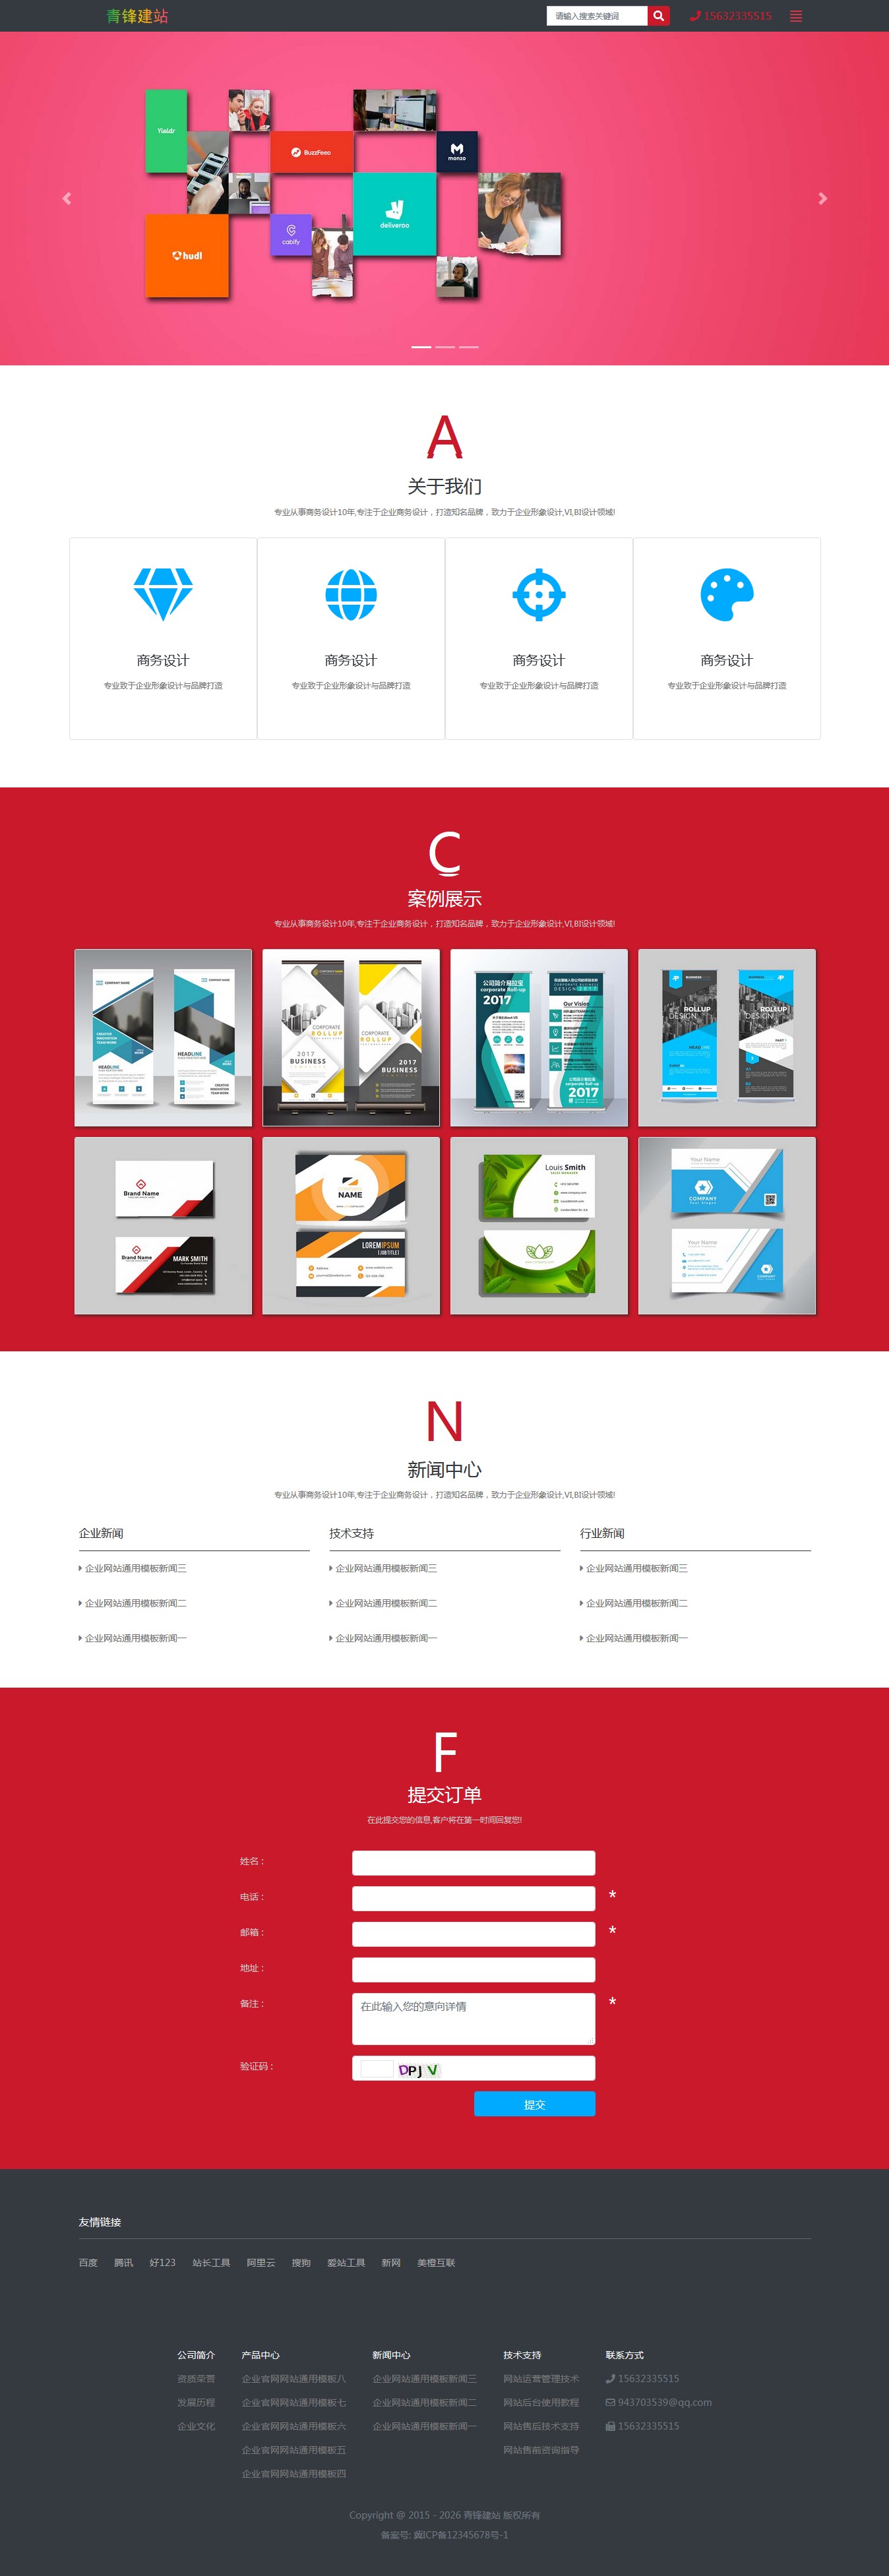 网页设计包装设计广告设计网站模板